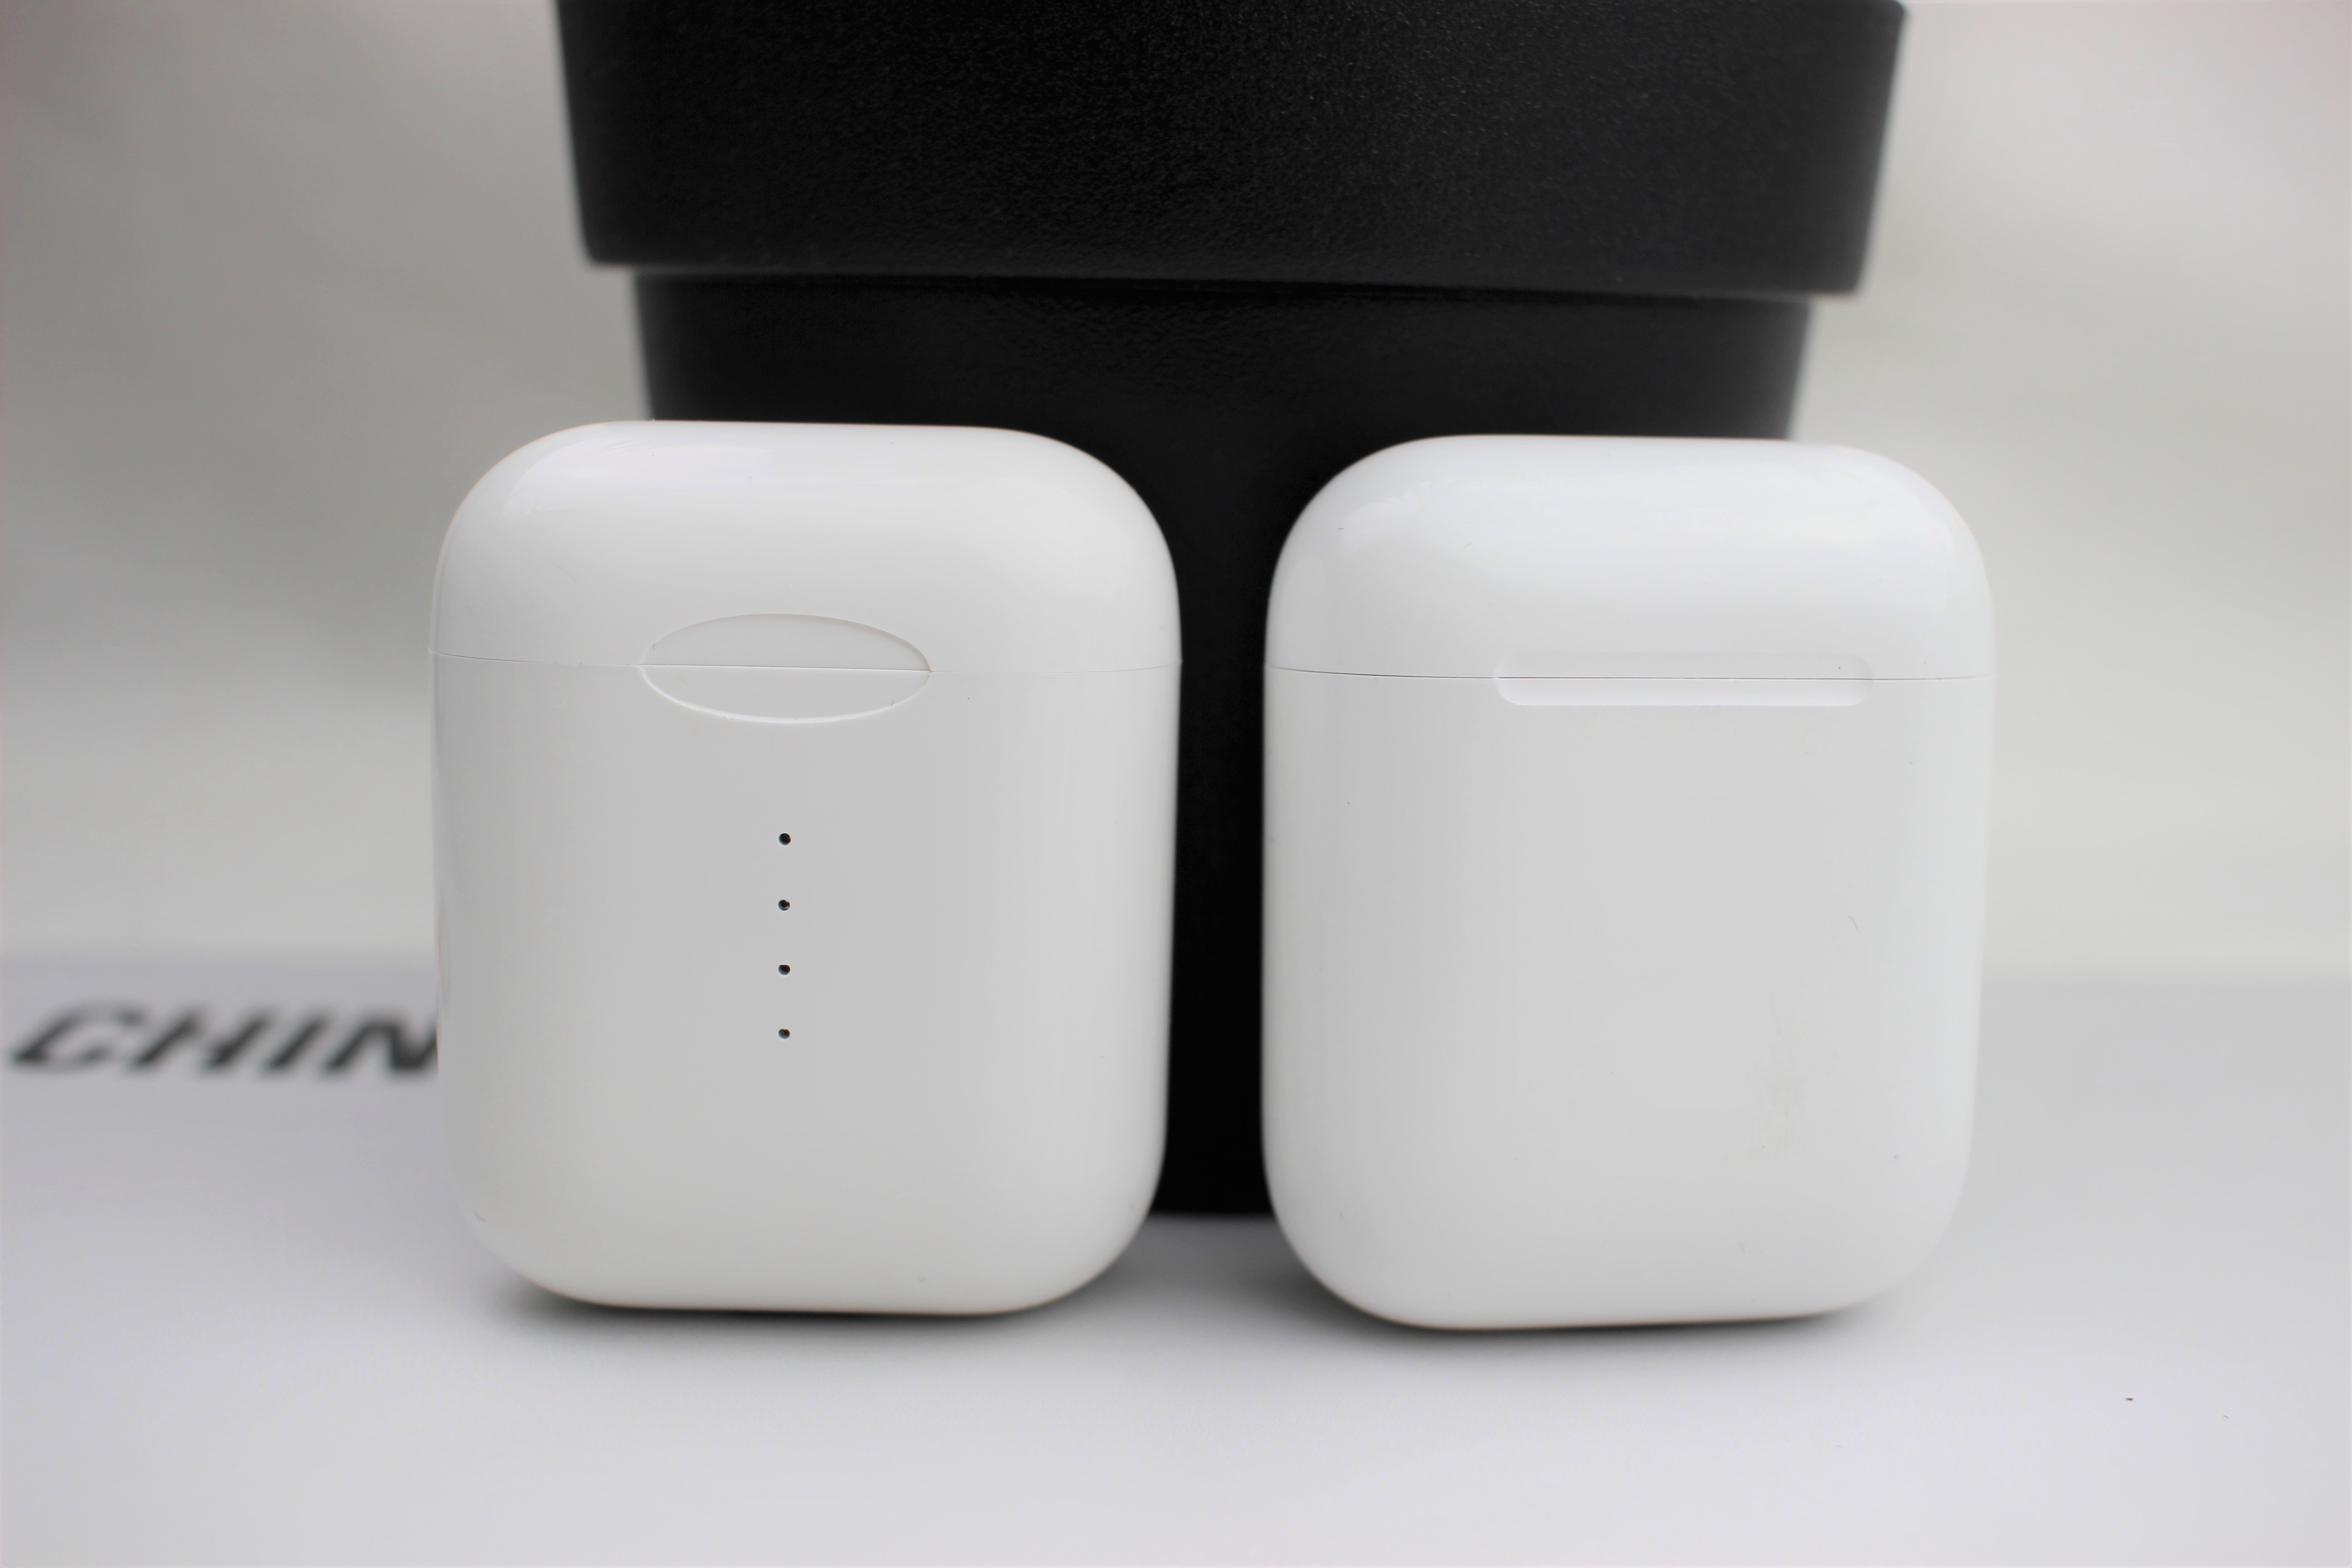 AirPod Klon im Test: Ist der TWS i10 Bluetooth Kopfhörer sogar besser?